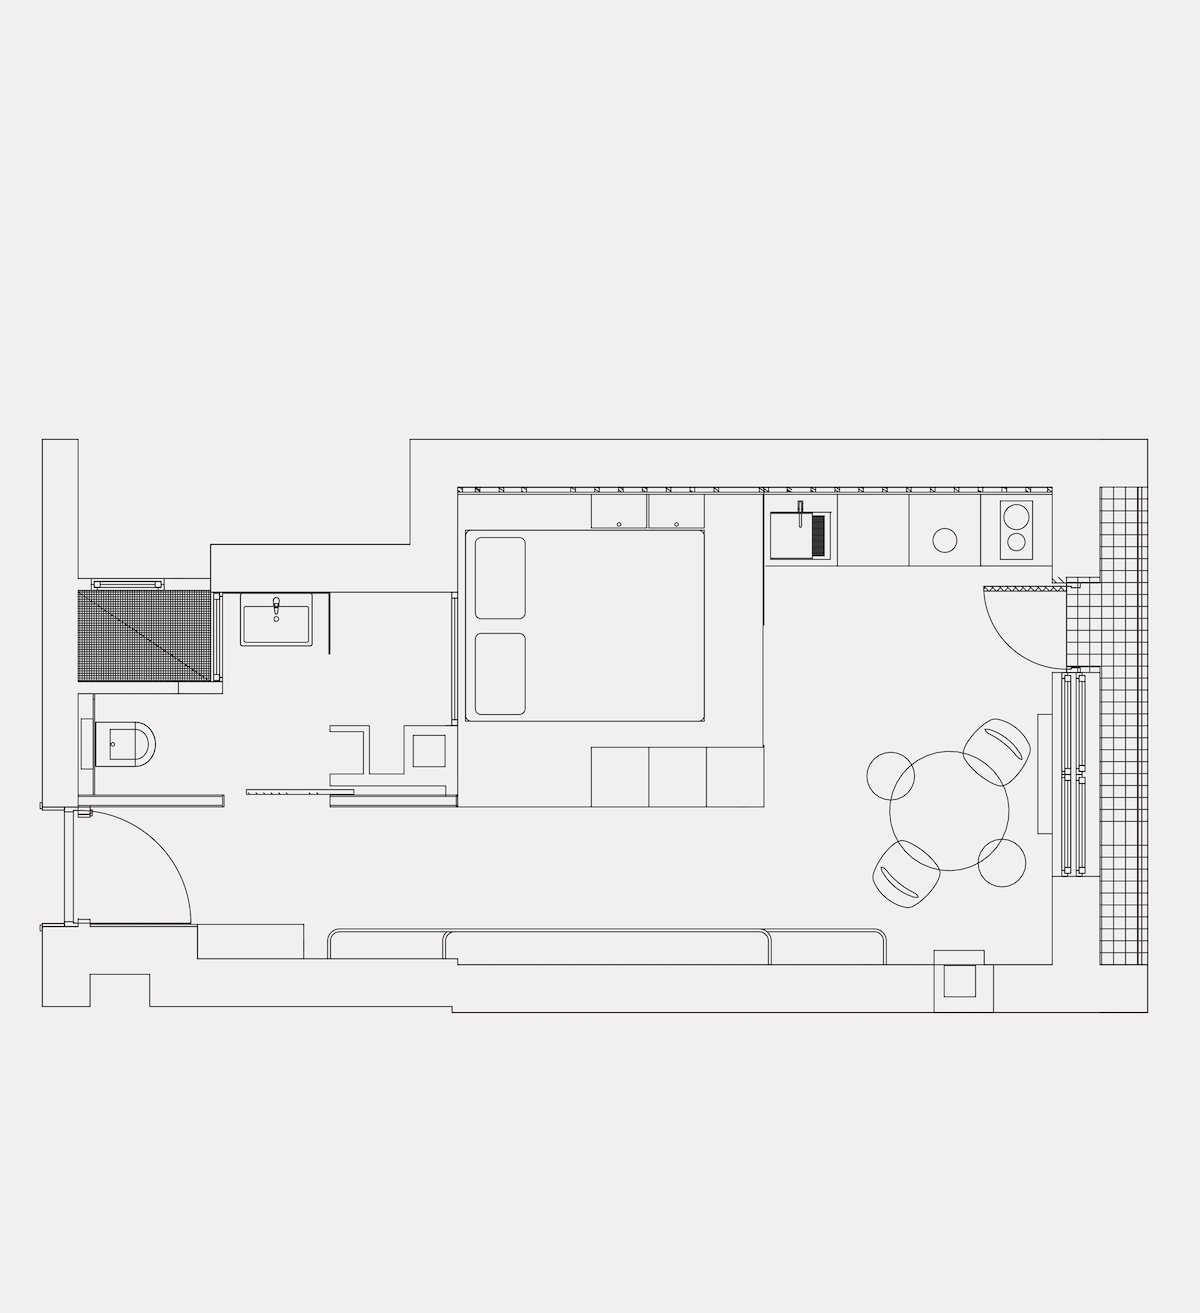 clem around the corner studio de 30m2 plan appartement cuisine aménagement petit espace